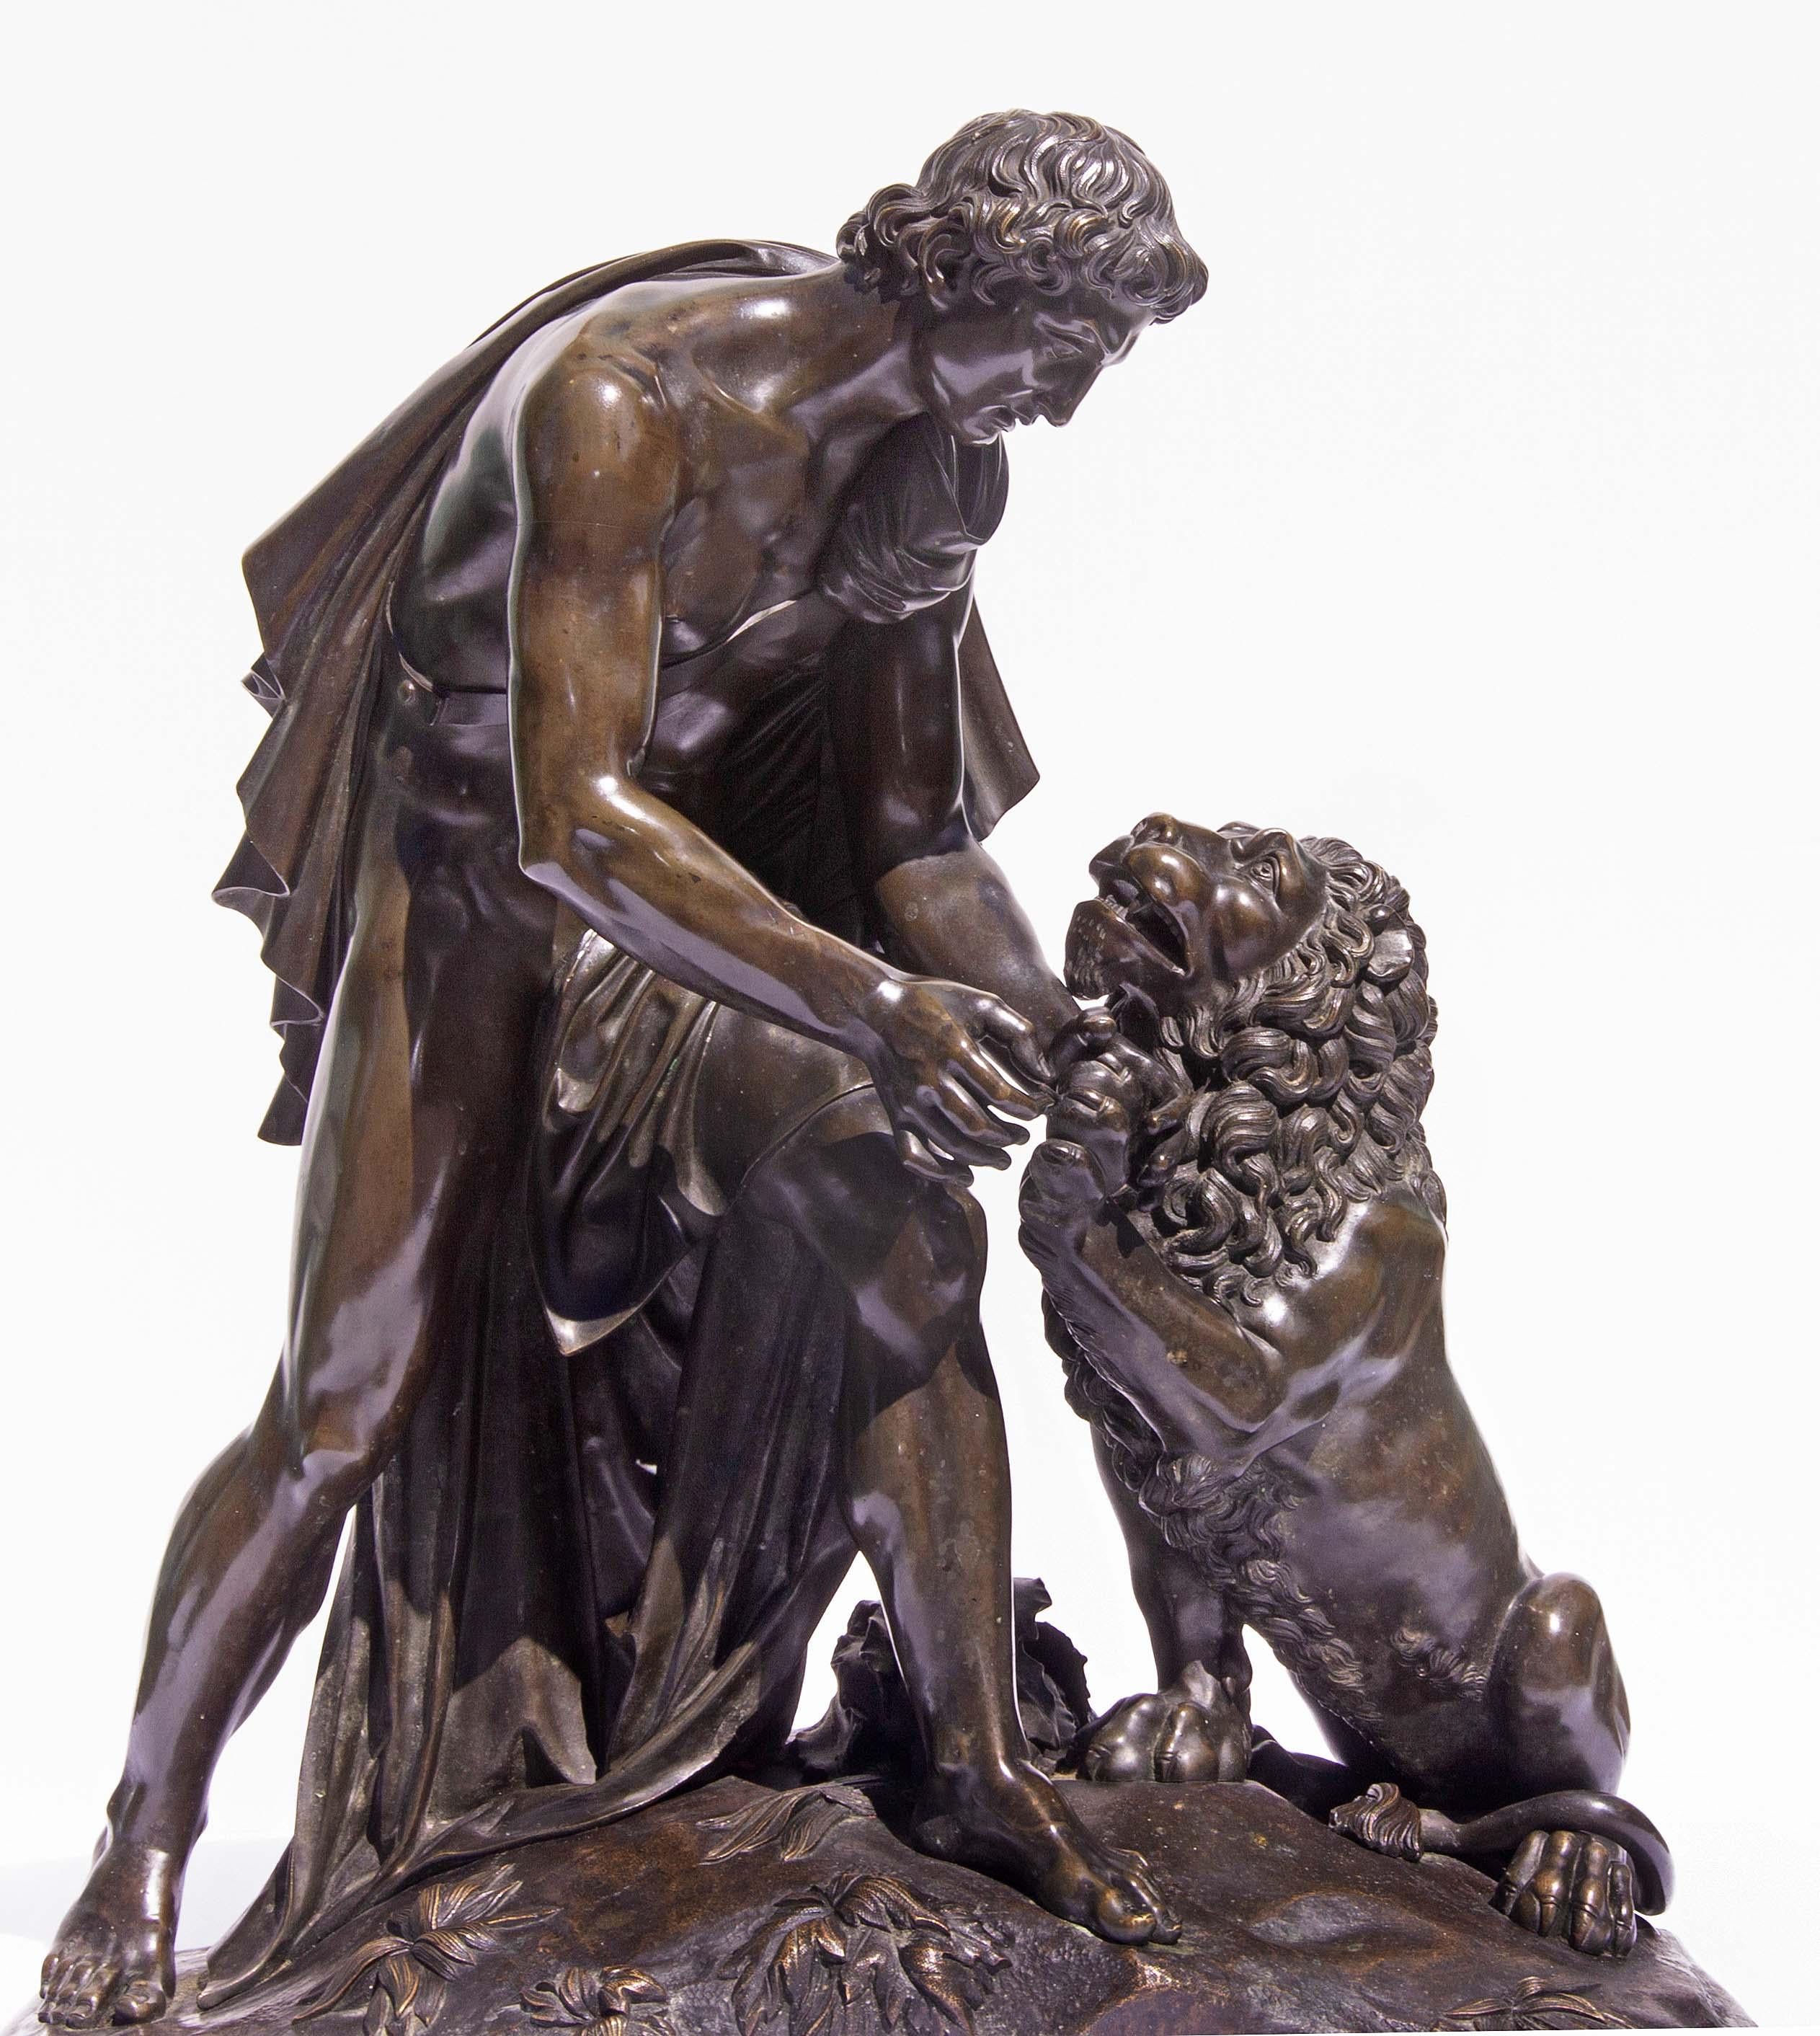 Große französische neoklassizistische Skulptur von Androkel und dem Löwen. Außergewöhnliche Gussqualität und Patina. Mitte des 19. Jahrhunderts.
Der entlaufene Sklave Androkles schloss Freundschaft mit einem verwundeten Löwen, weil er ihm einen